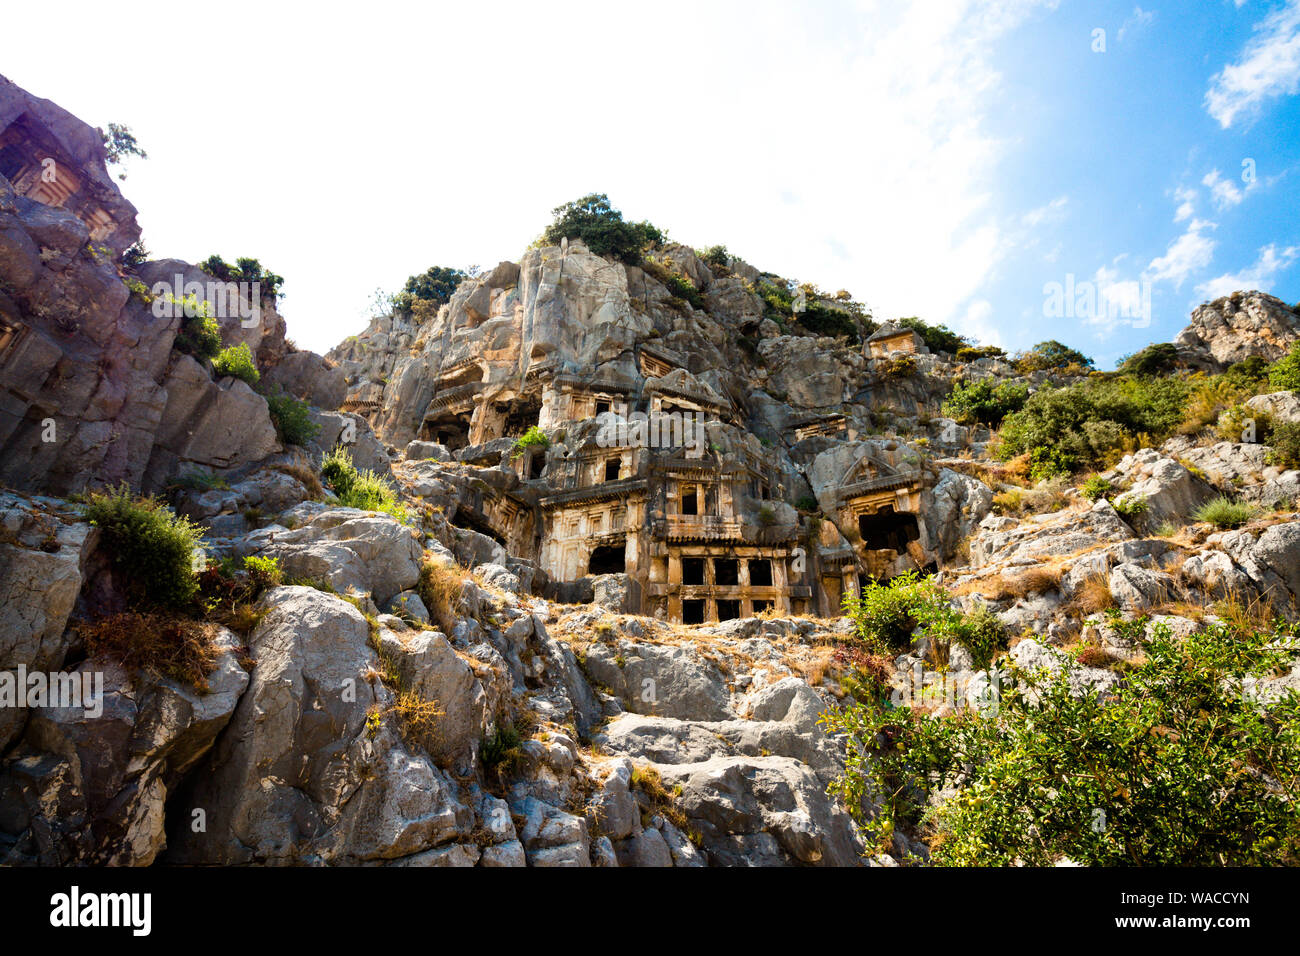 Les ruines des tombeaux de l'ancienne civilisation. Tombes sont sculptées dans la roche sur le territoire de la Turquie moderne. Banque D'Images